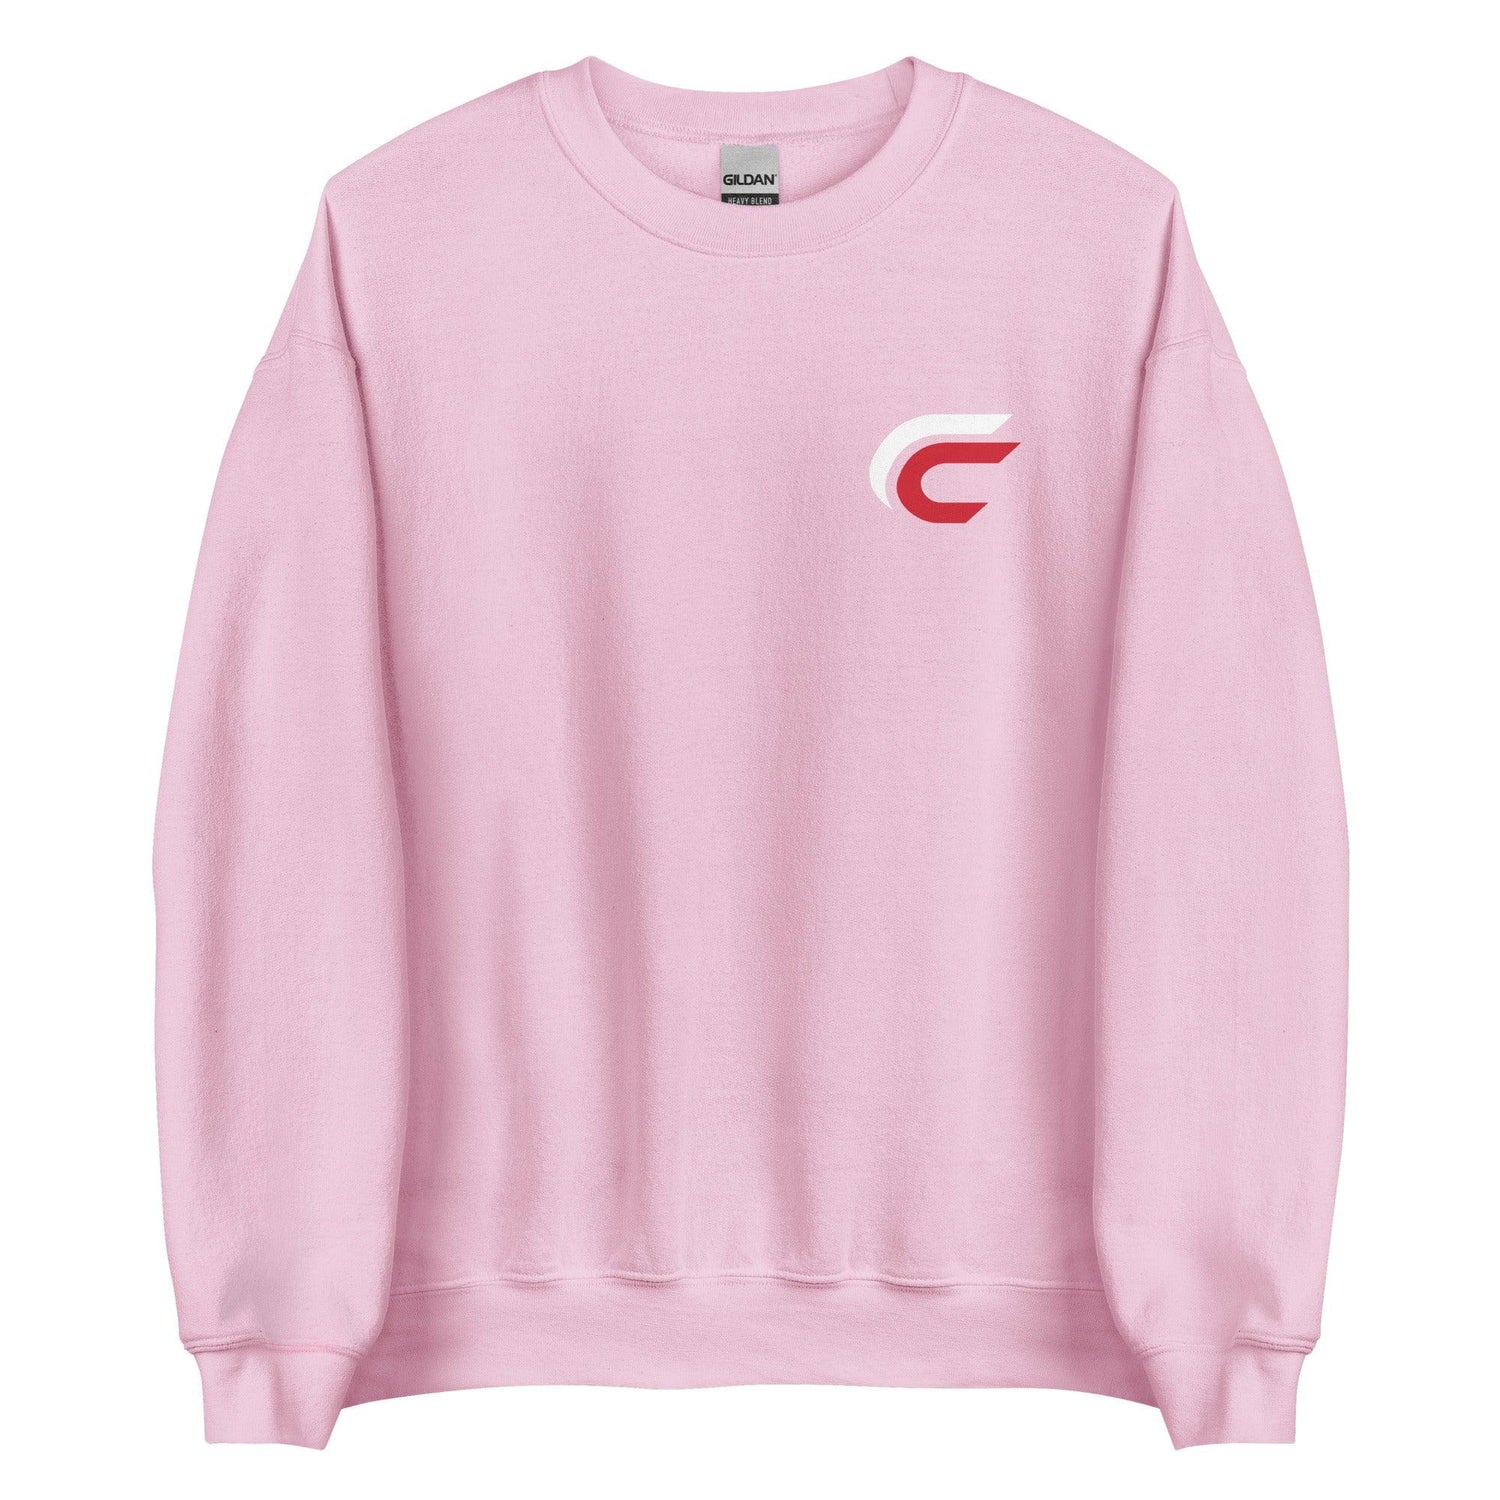 Cole Carbone "Essential" Sweatshirt - Fan Arch